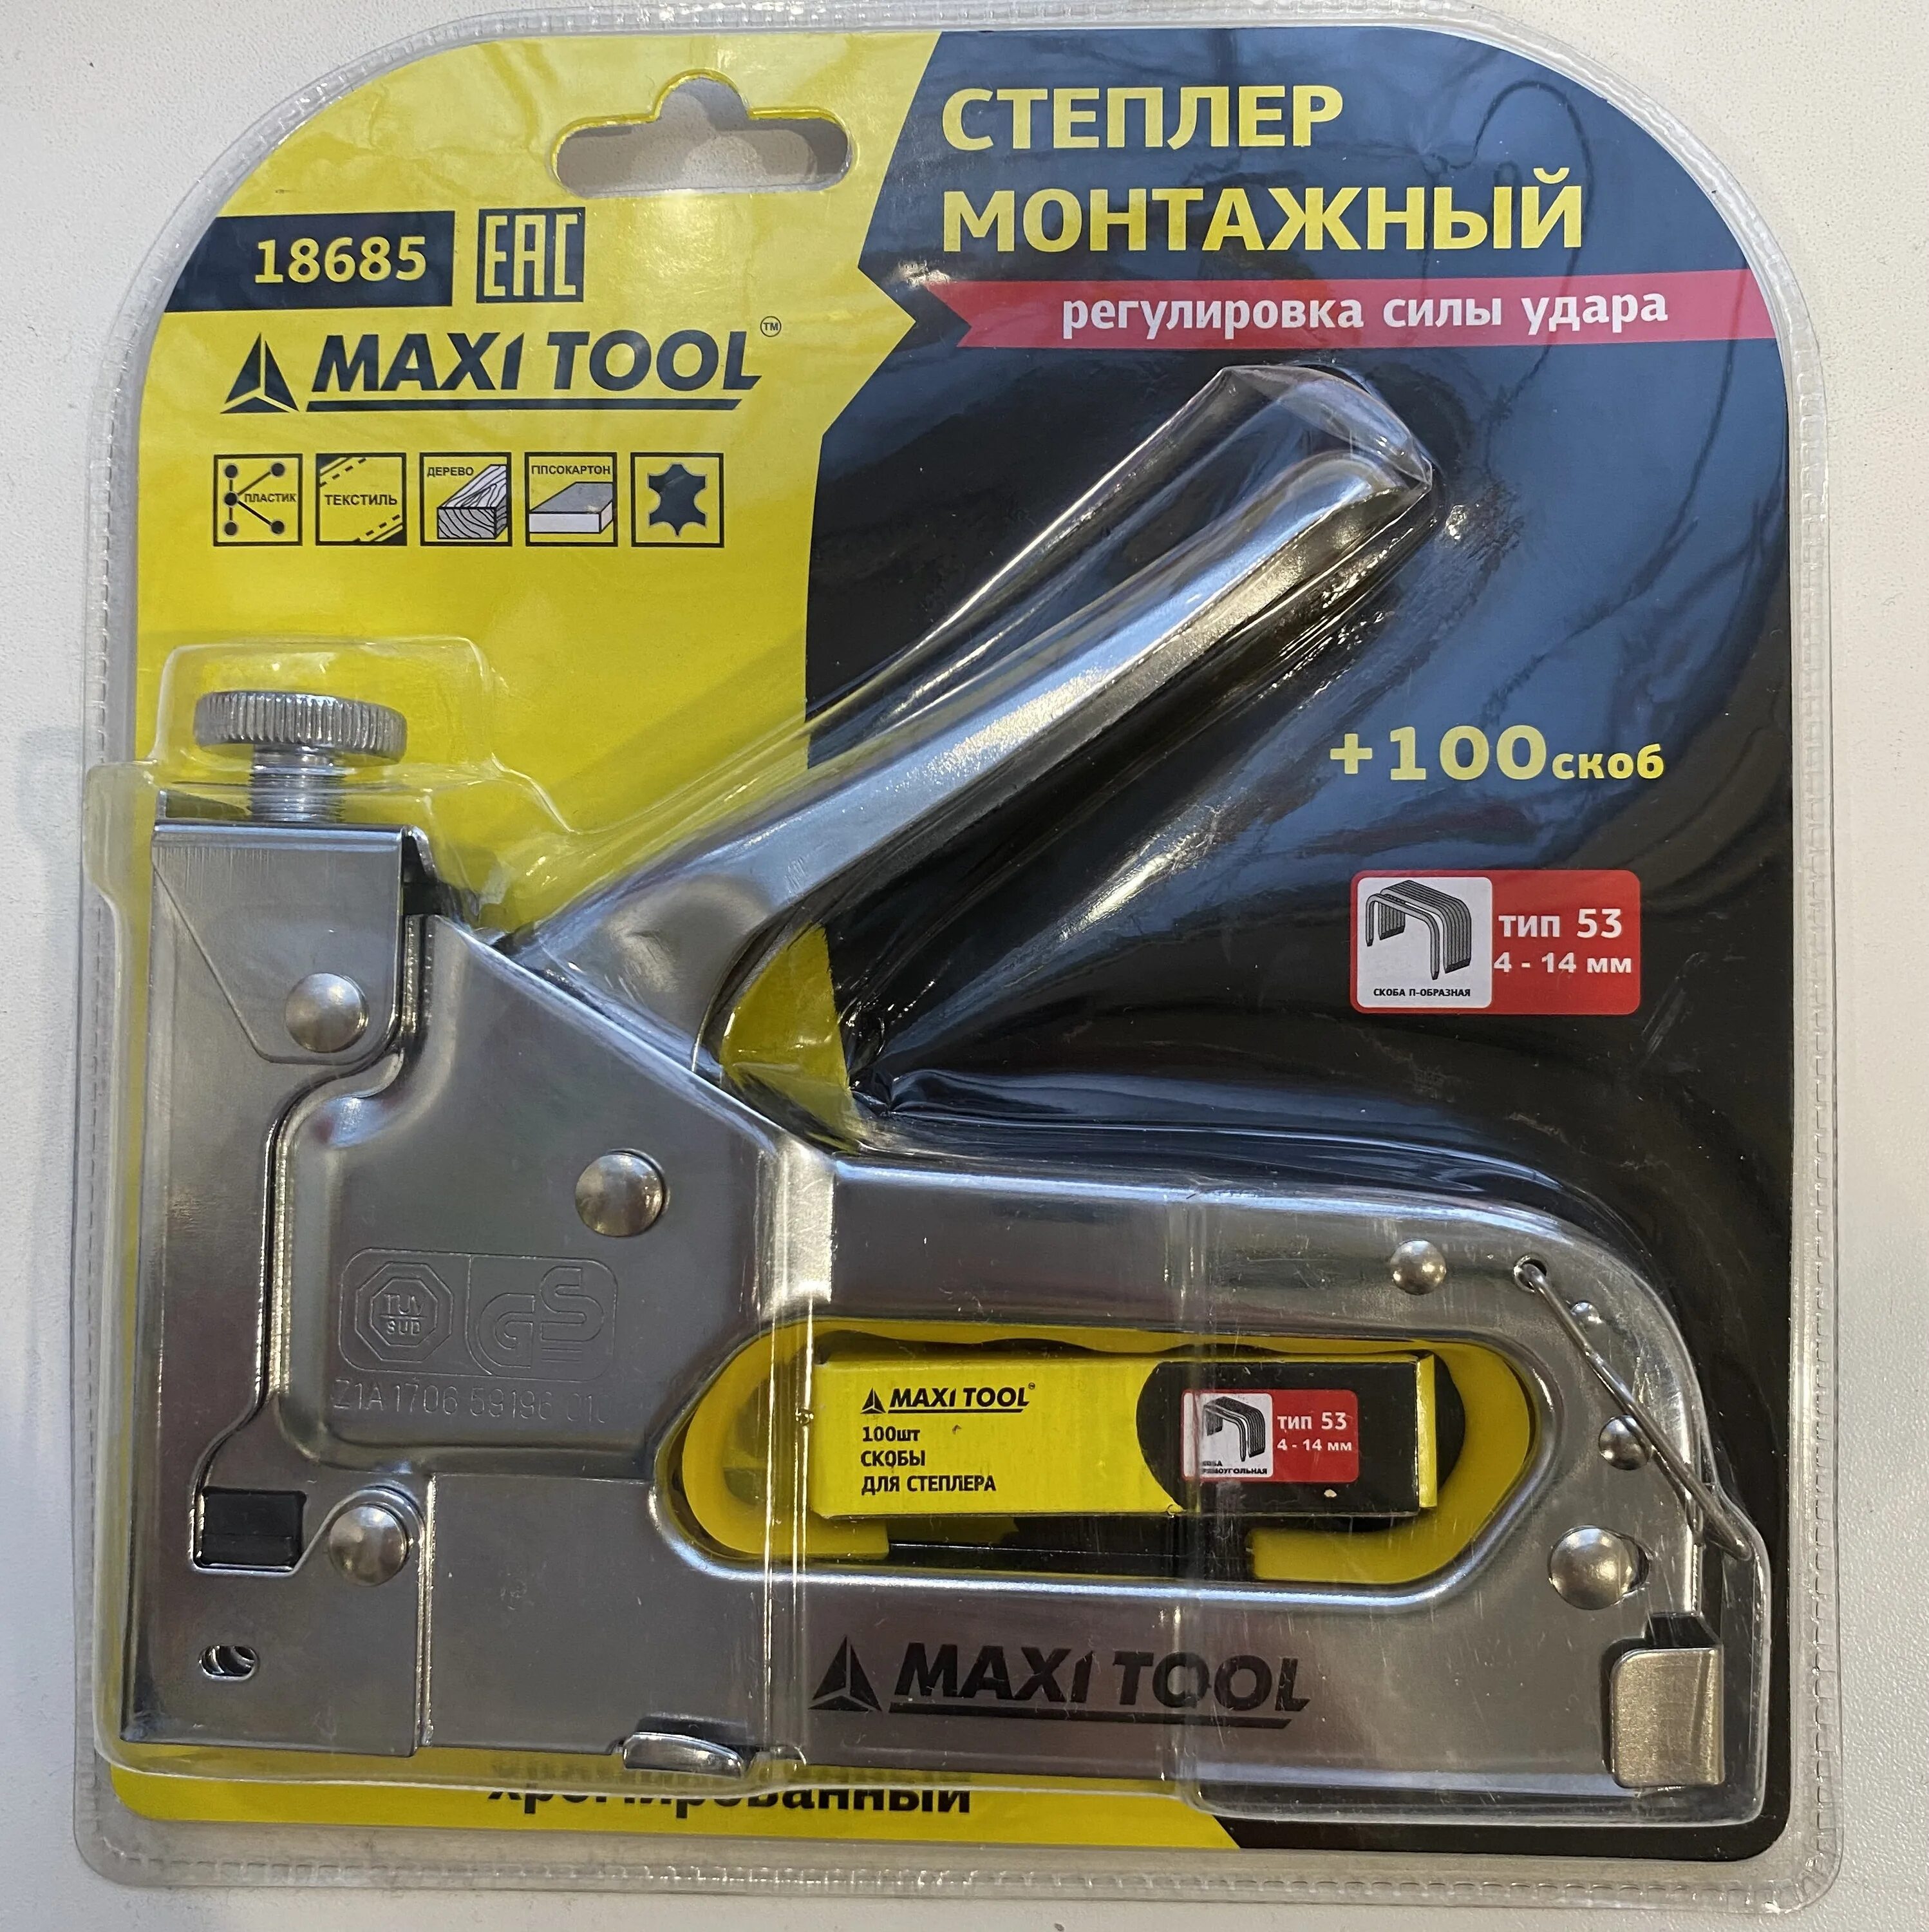 Maxi tool. Степлер мебельный Maxi Tool. Строительный степлер Maxi Tool вид снизу. Монтажный степлер Vertex. Бита Maxi Tool.